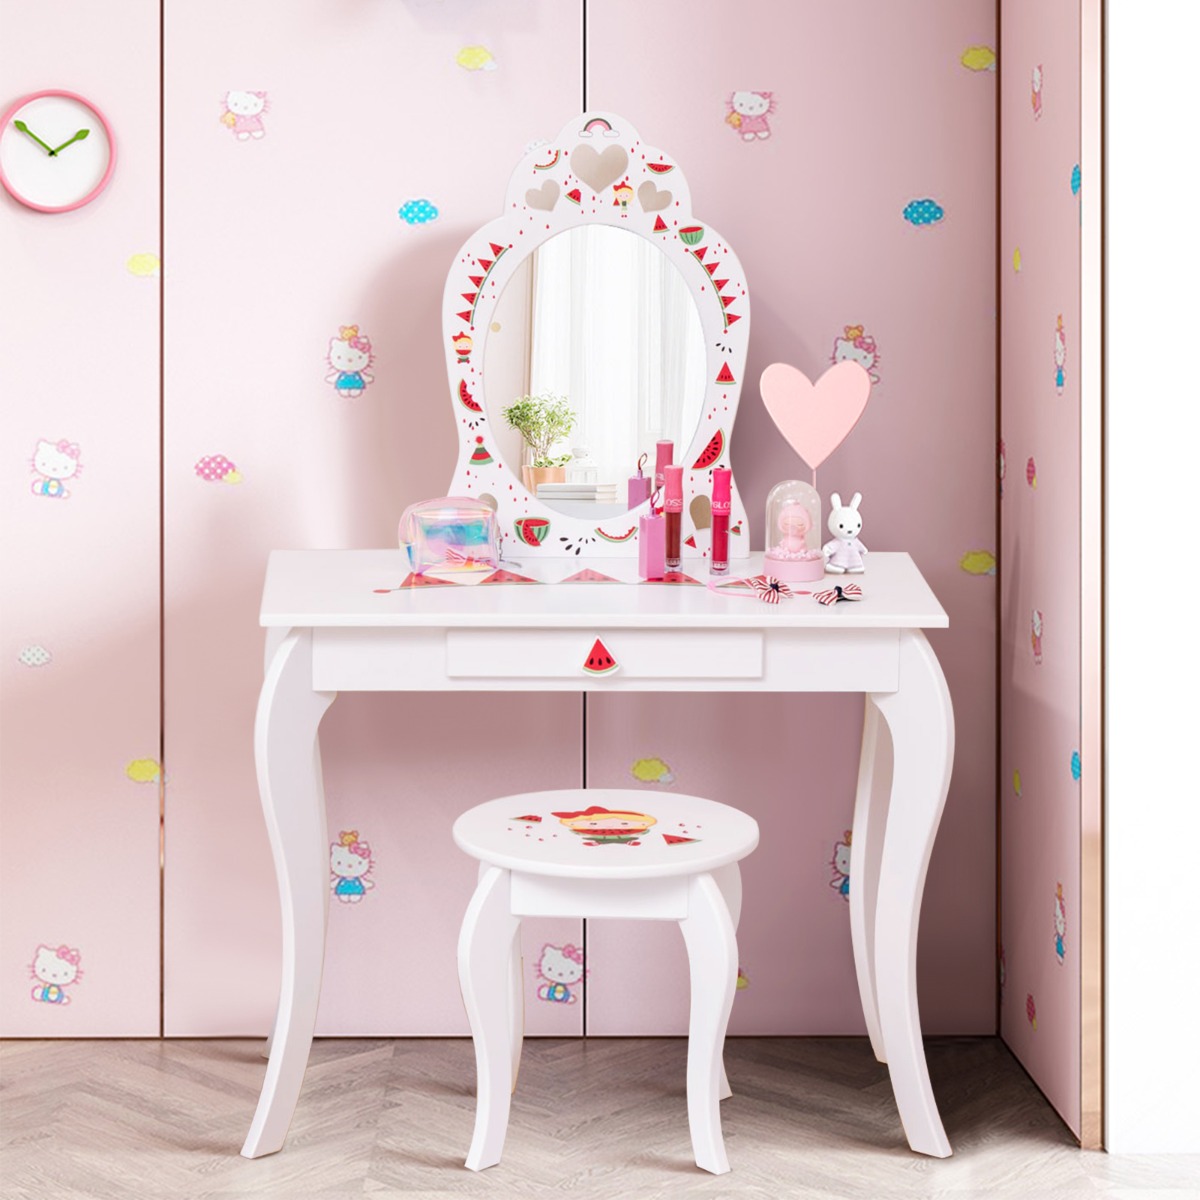 Costway Kaptafelset Prinses 2 in 1 Kinderkaptafel met Afneembare Spiegel en Lade Watermeloenontwerp voor Kinderen Vanaf 3 Jaar Wit